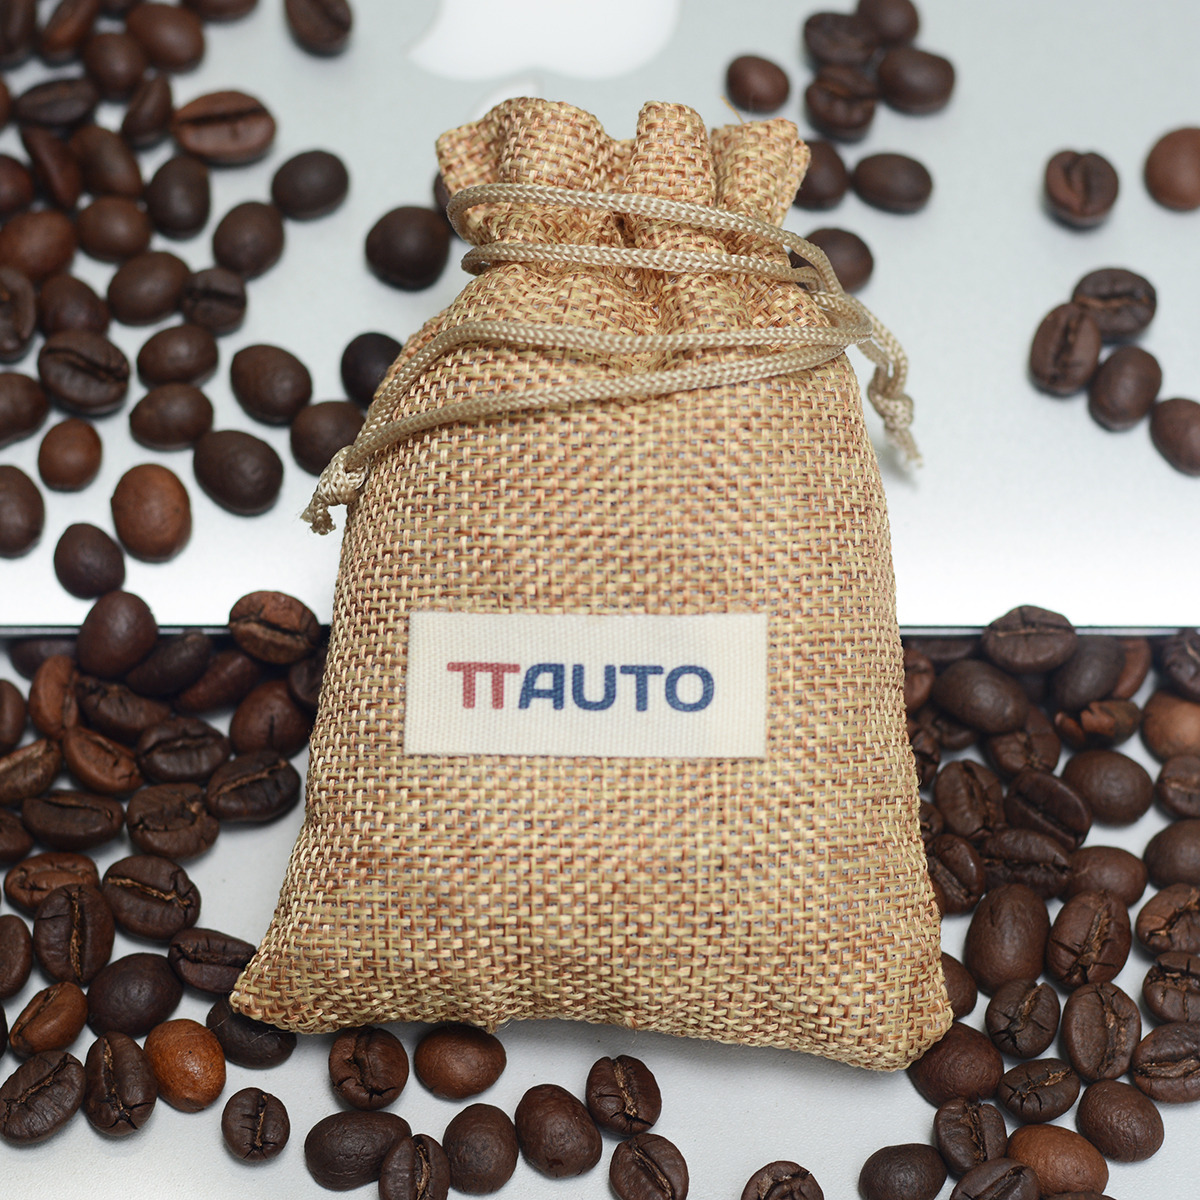 Túi thơm cà phê TTAUTO 100% hạt nguyên chất khử mùi trên ô tô, tủ đồ, văn phòng